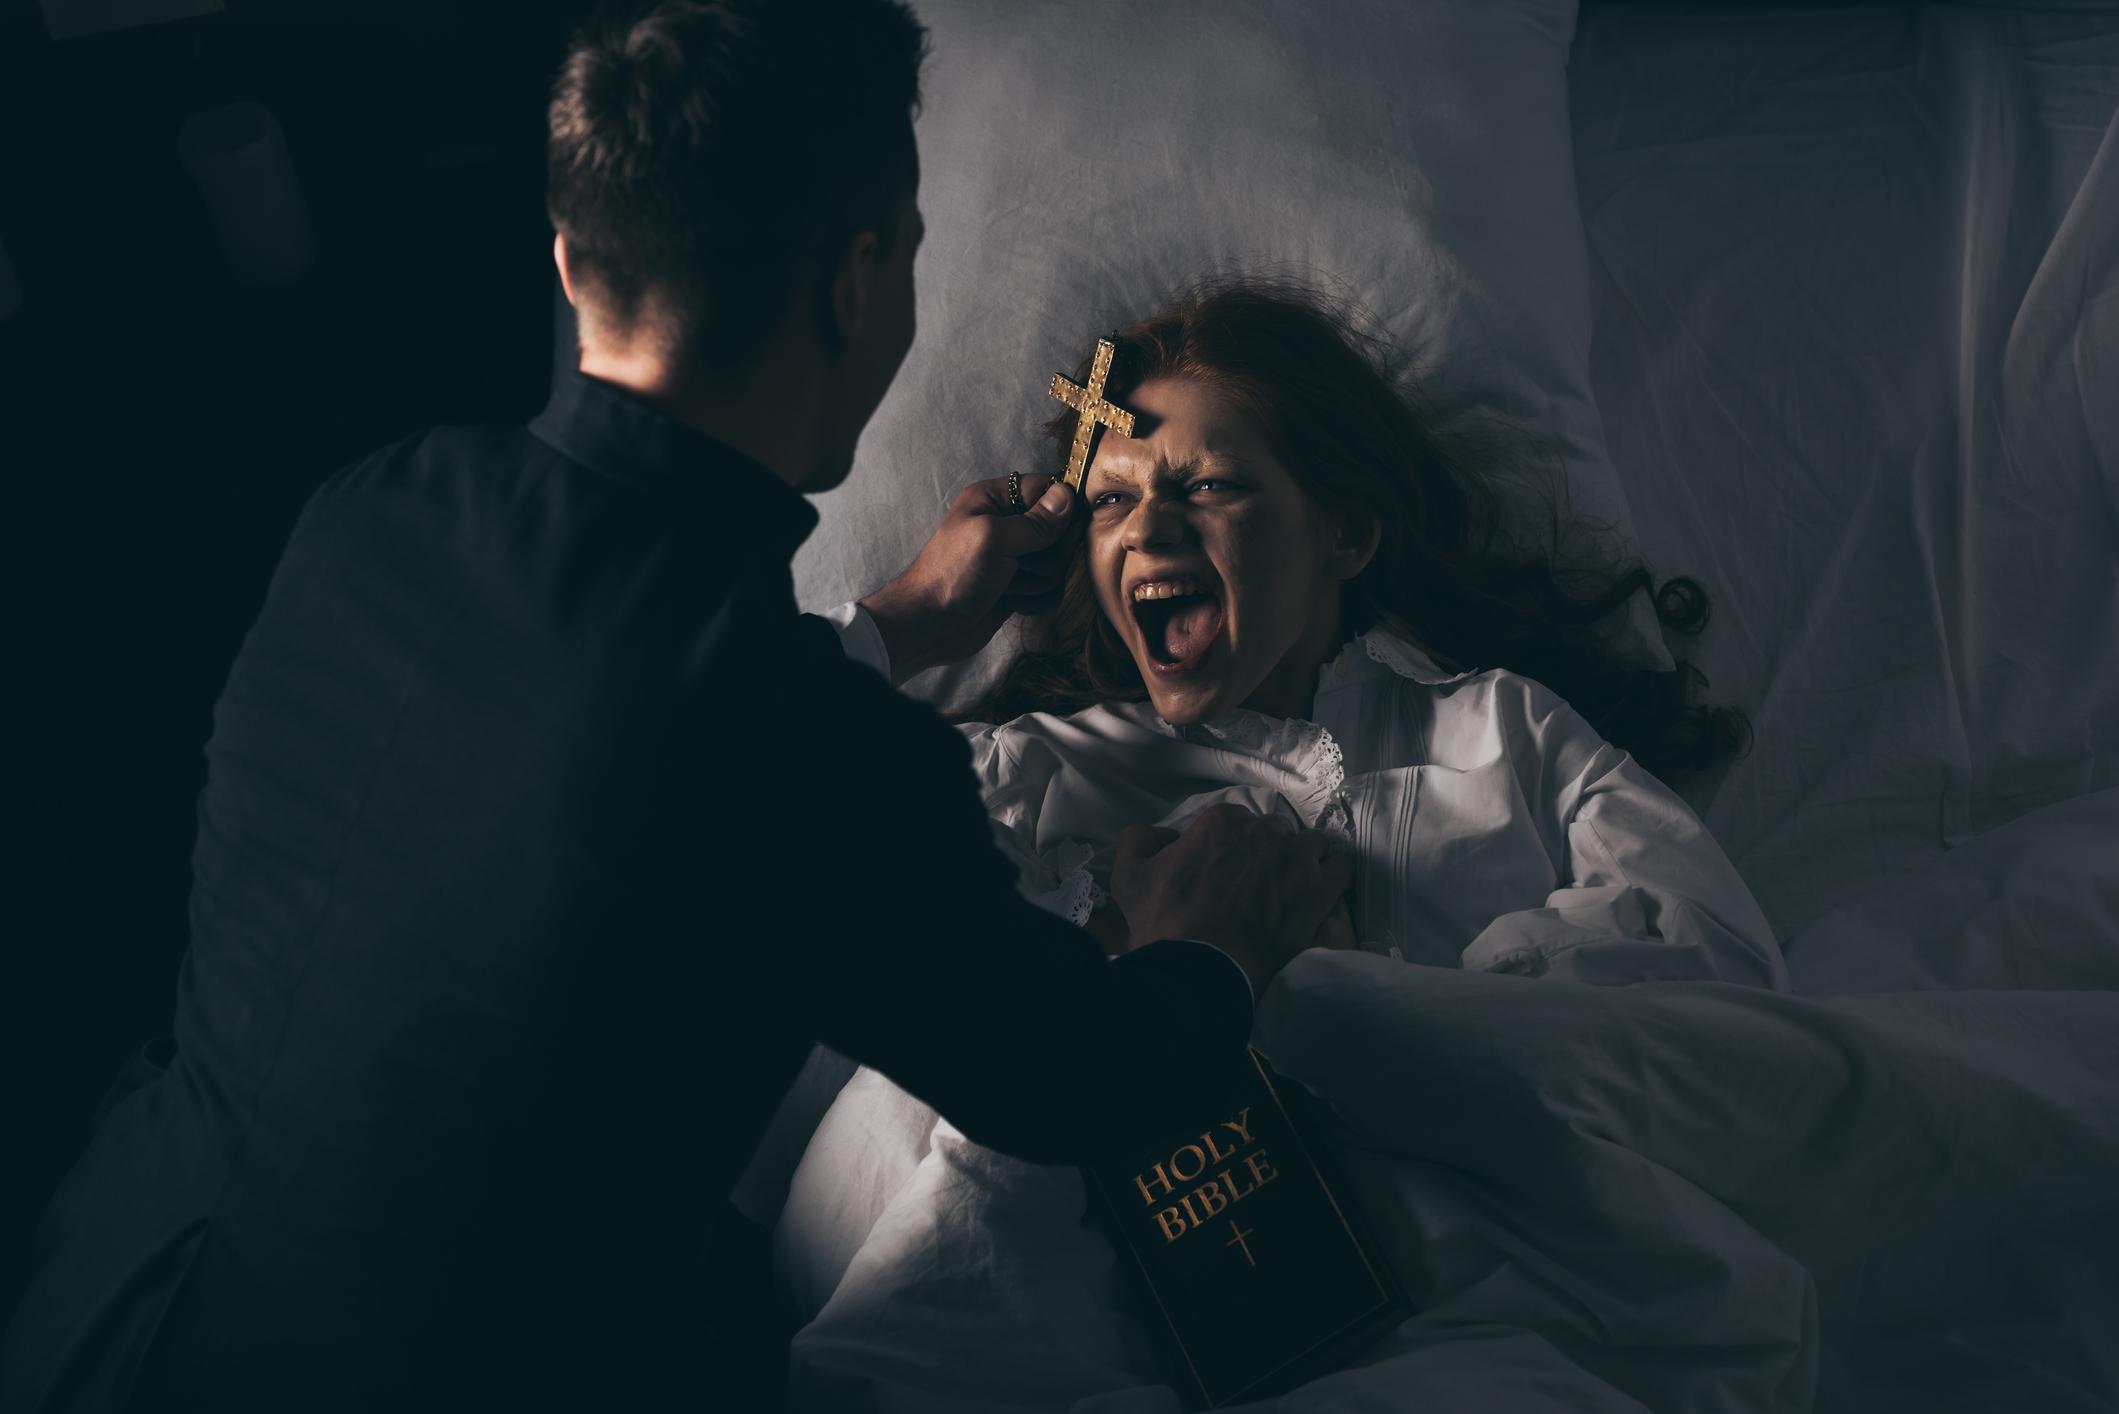 Padre pratica exorcismo